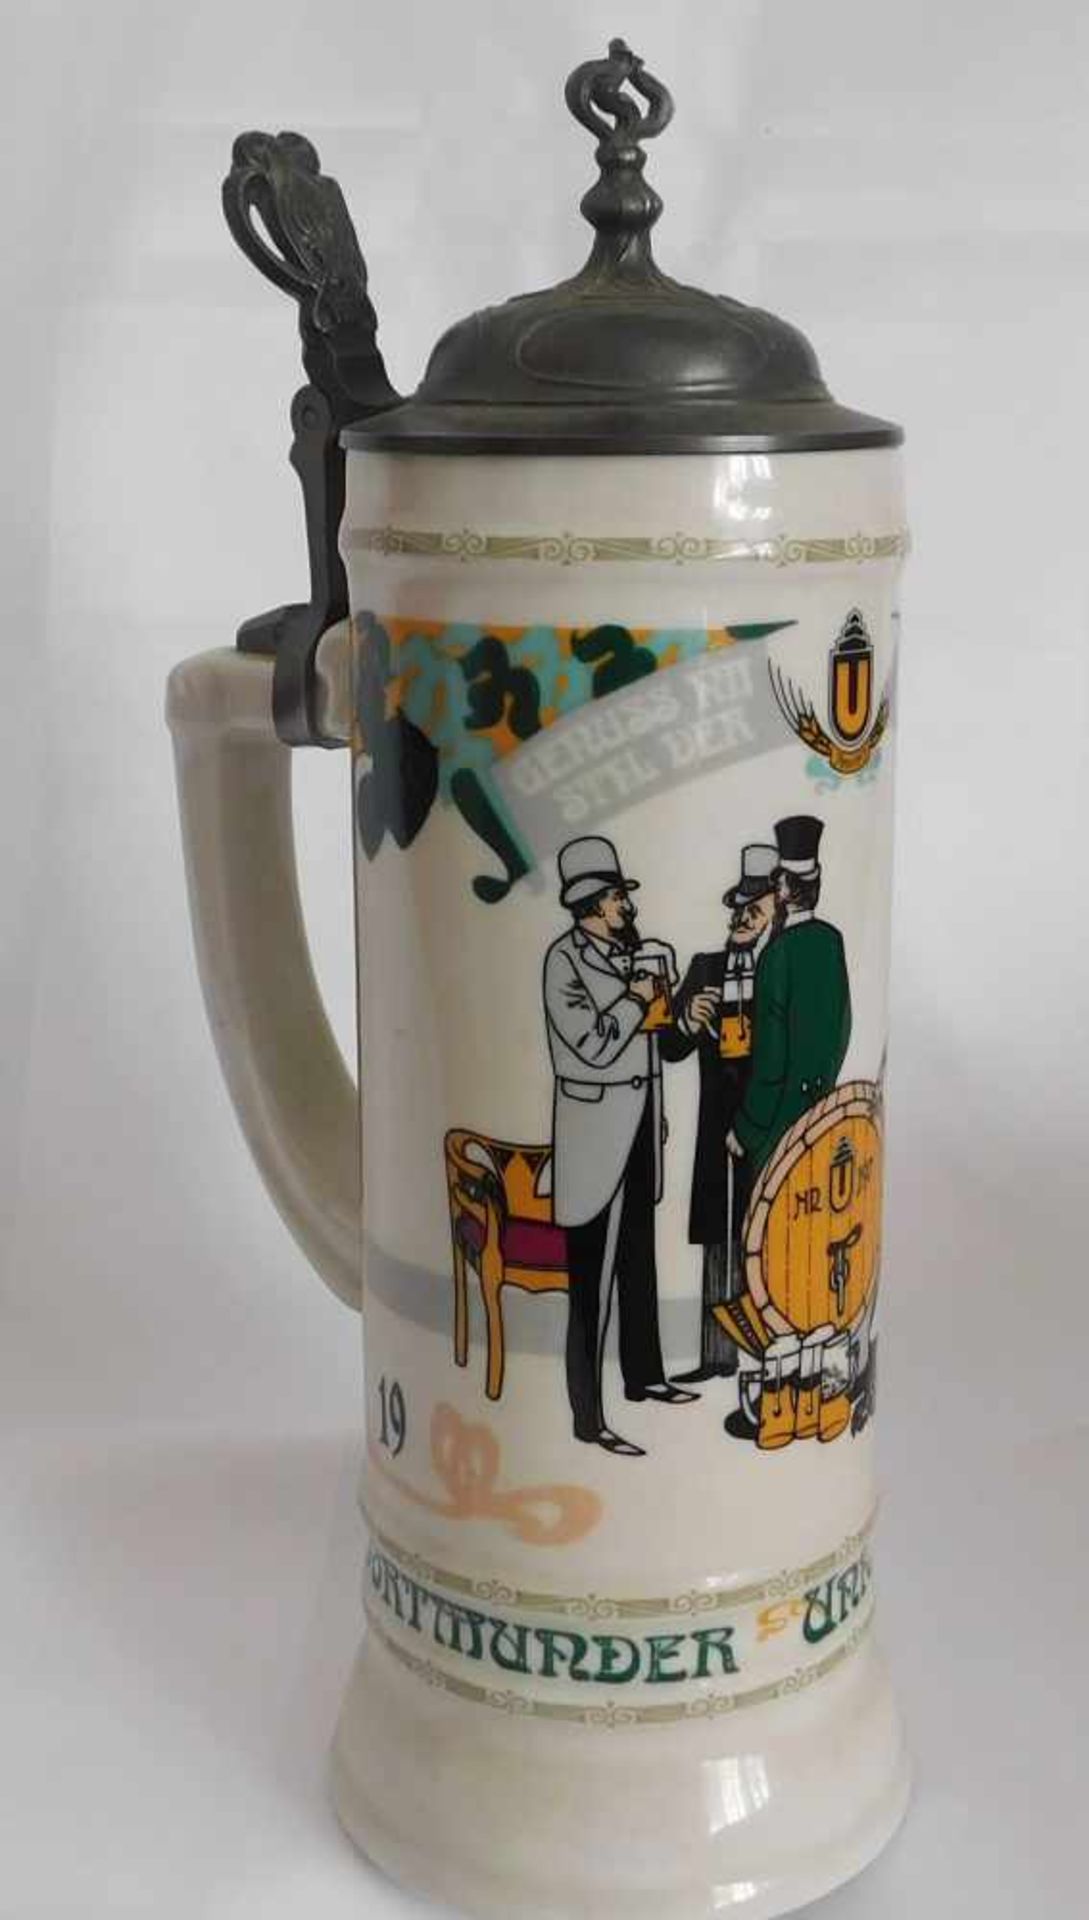 Sammlerkrug, Humpen, Keramik mit Zinndeckel, Dortmunder Union Brauerei 1984, Höhe 32,5 cm - Bild 2 aus 3